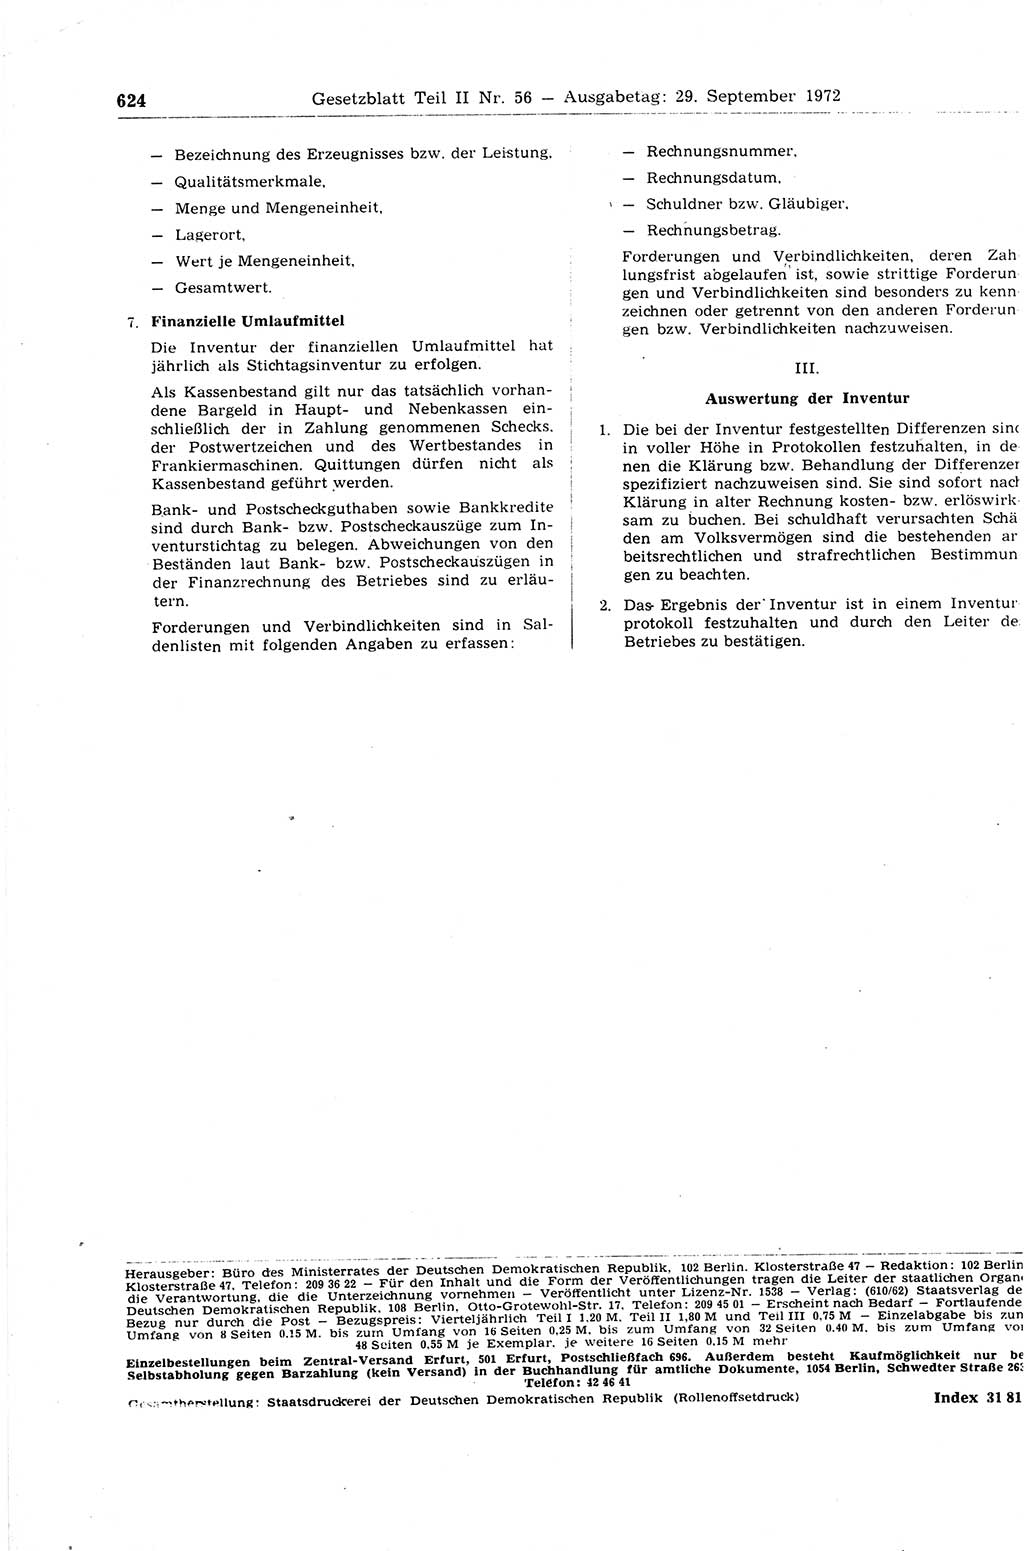 Gesetzblatt (GBl.) der Deutschen Demokratischen Republik (DDR) Teil ⅠⅠ 1972, Seite 624 (GBl. DDR ⅠⅠ 1972, S. 624)